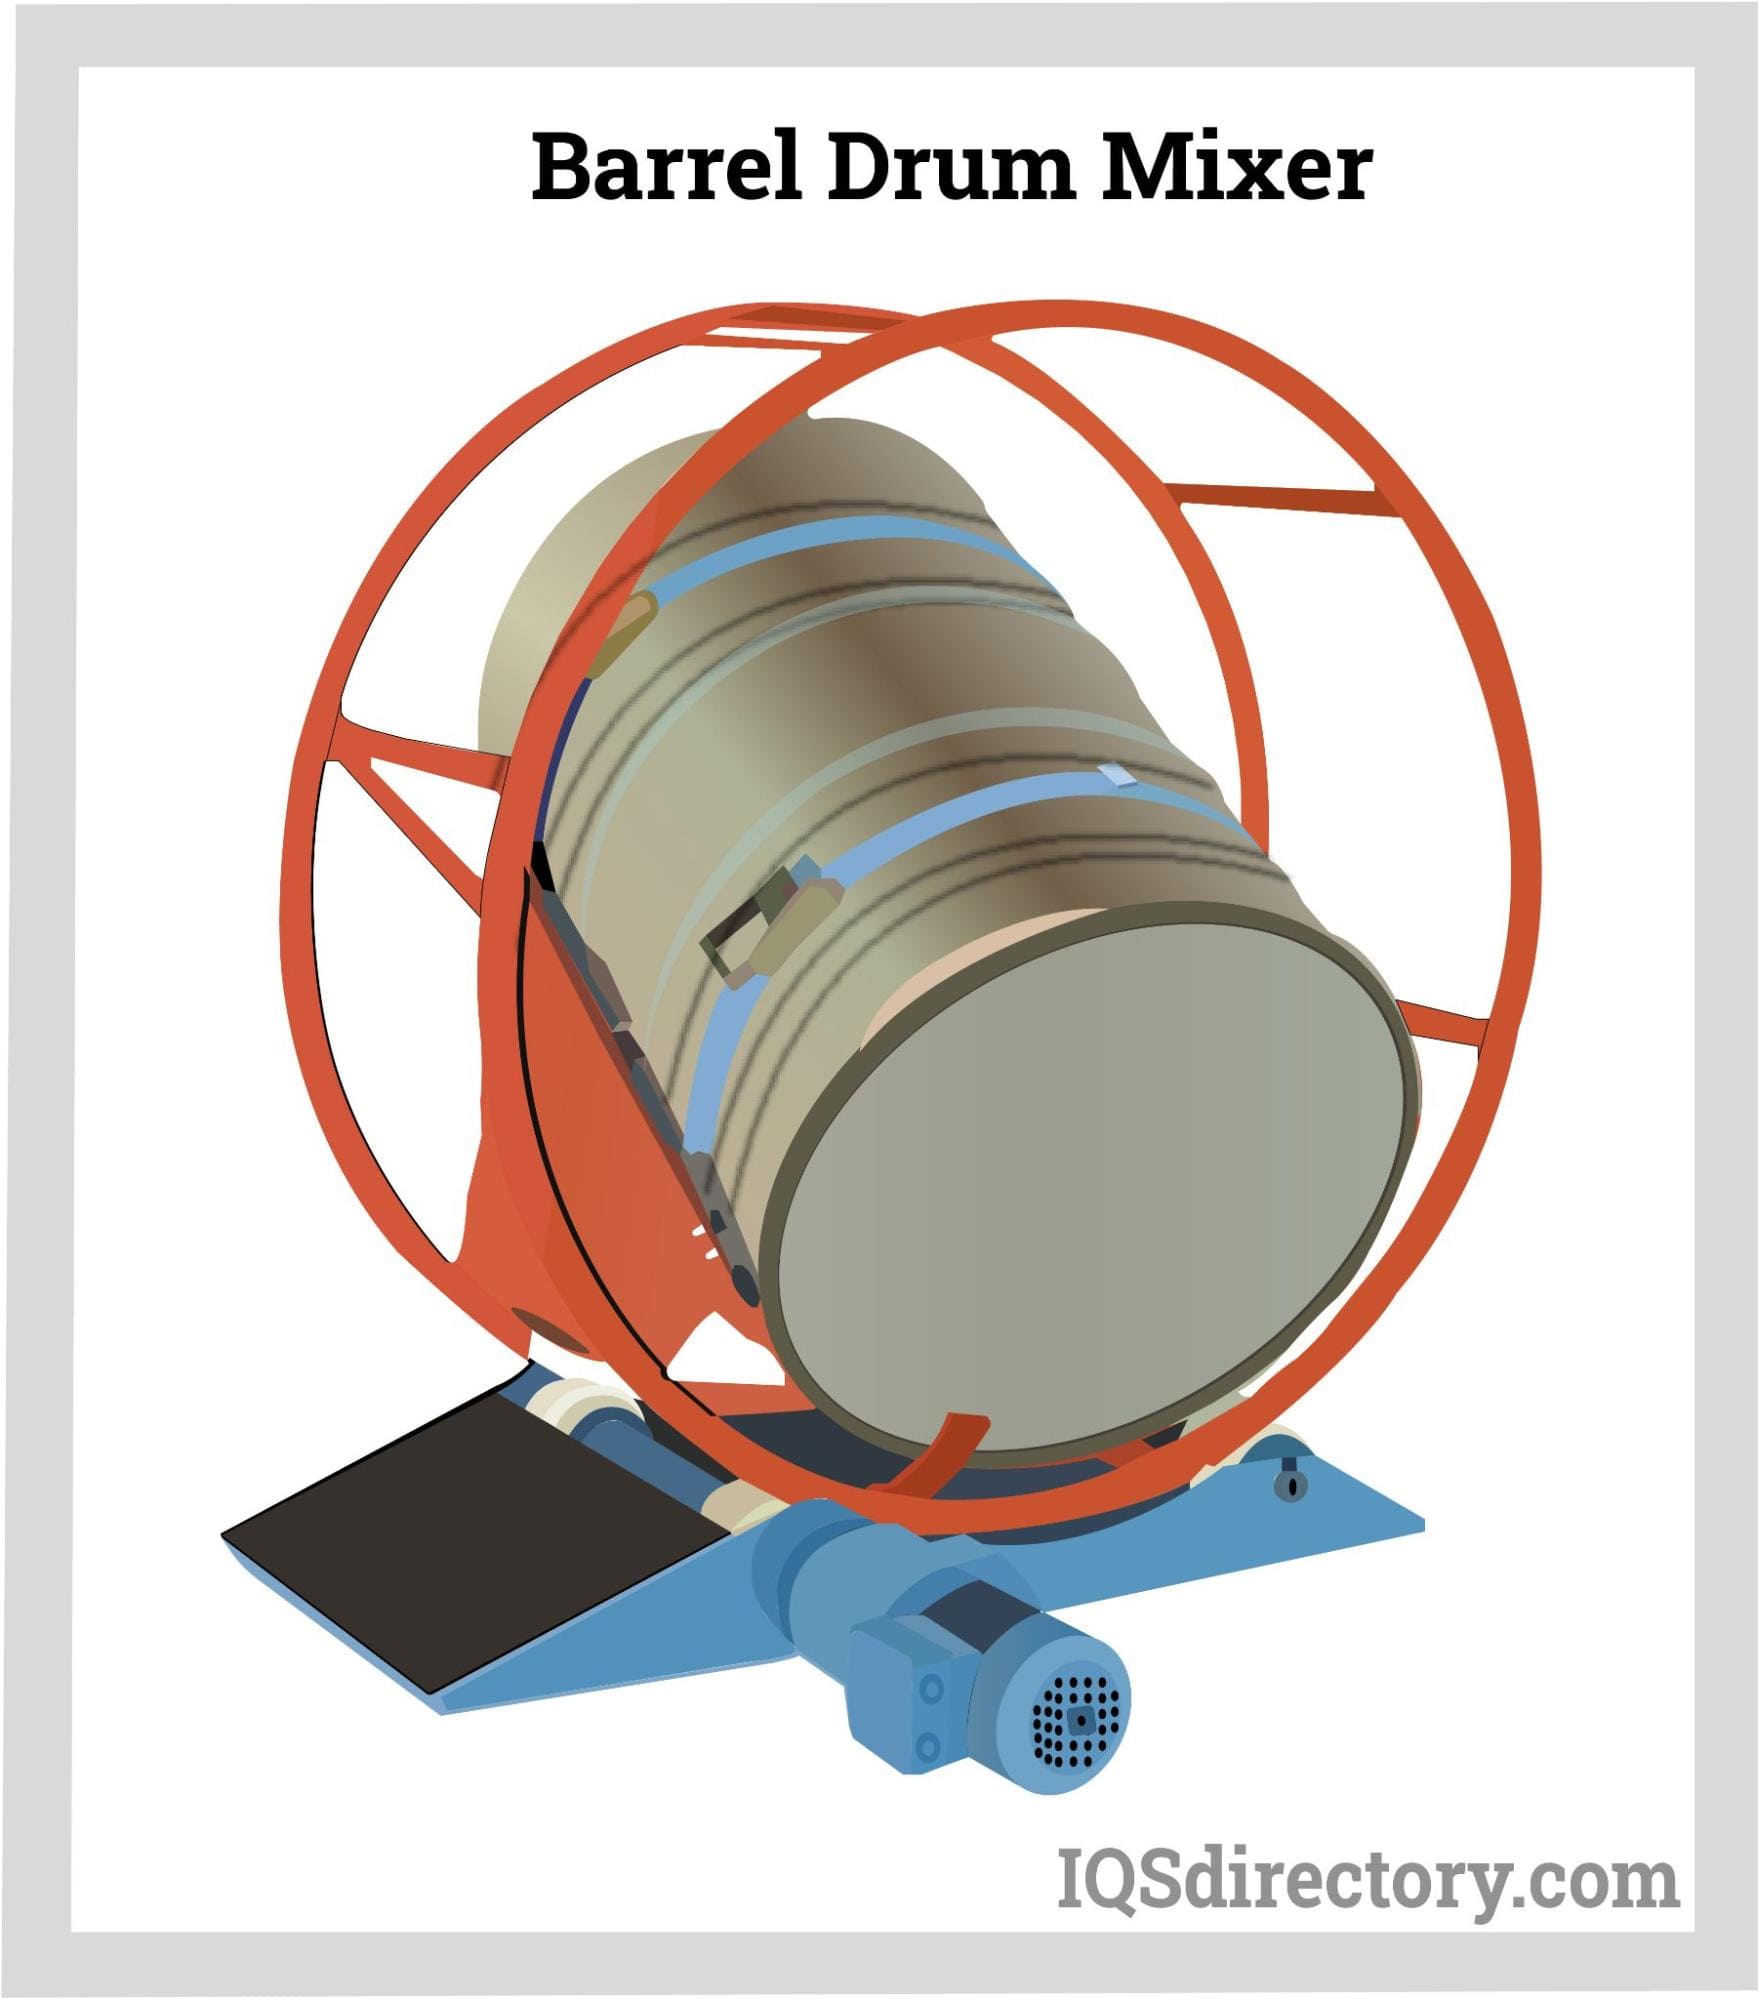 Barrel Drum Mixer